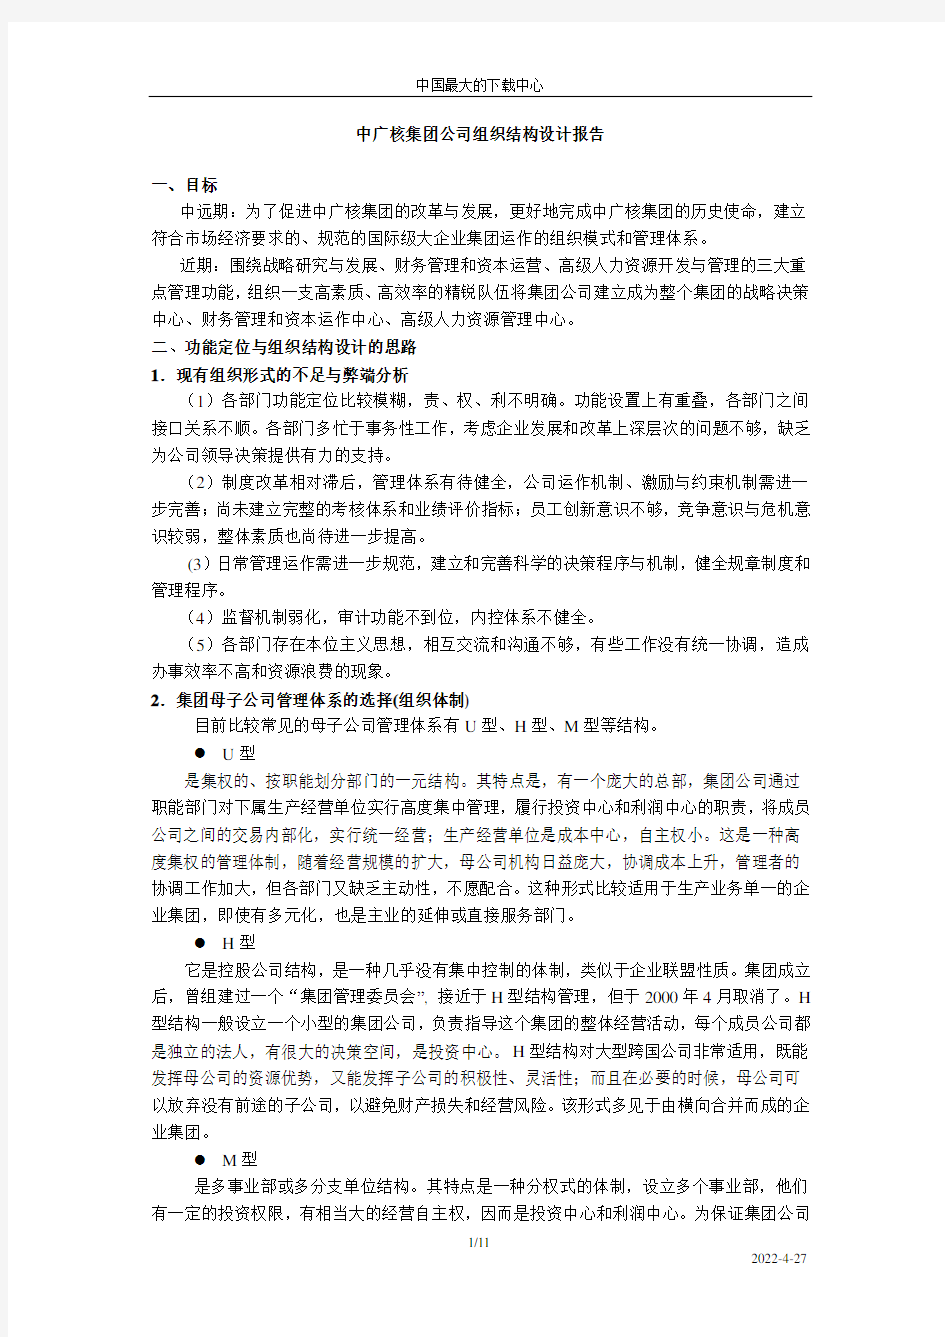 中广核集团公司组织结构设计报告